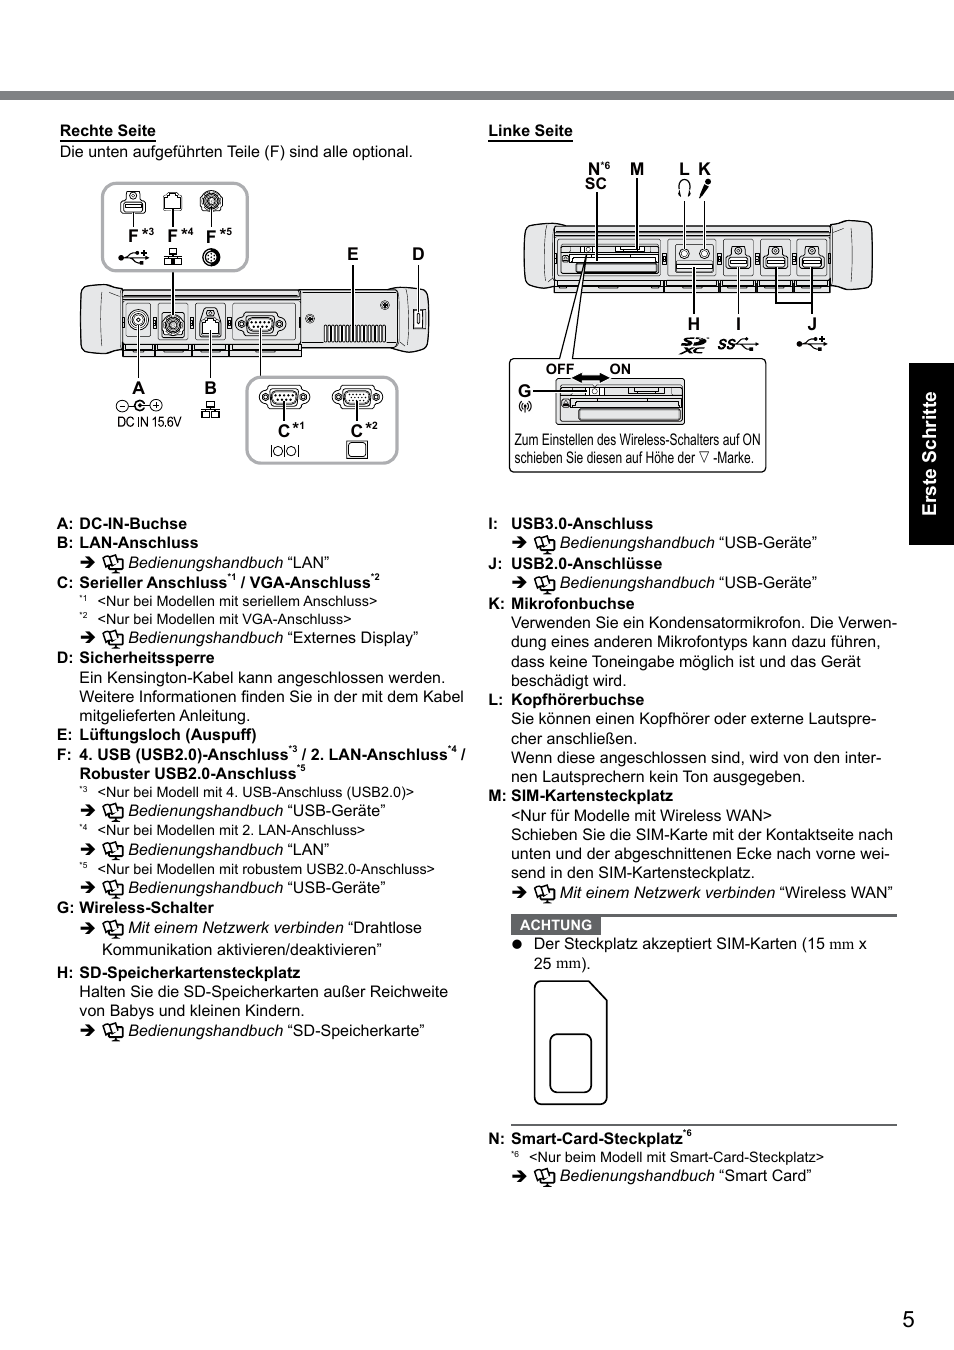 Erste schritte | Panasonic Toughbook CF-D1 Benutzerhandbuch | Seite 5 / 31